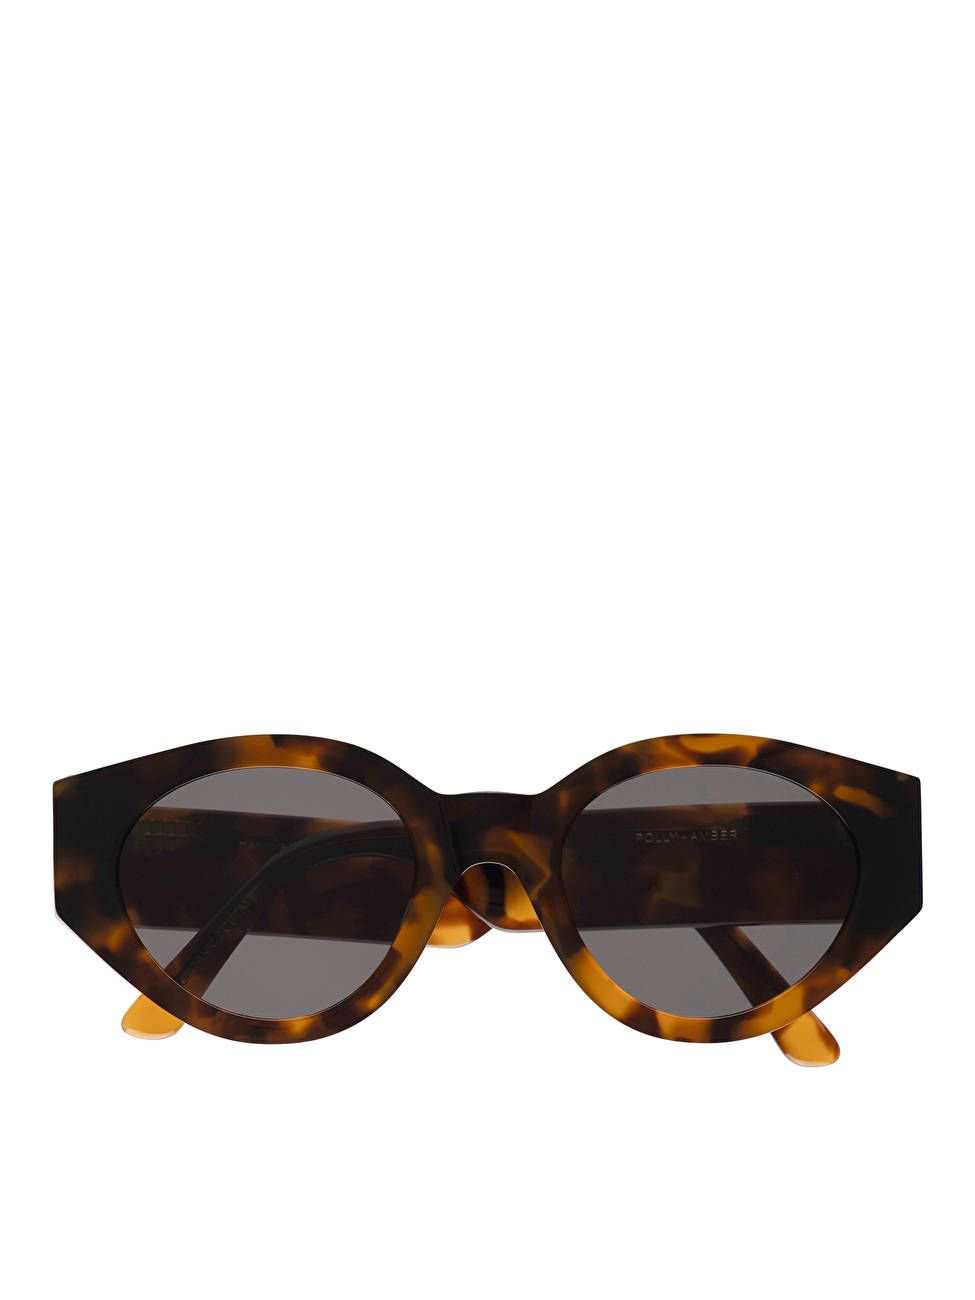 Monokel Eyewear Polly Sunglasses | ARKET (US&UK)